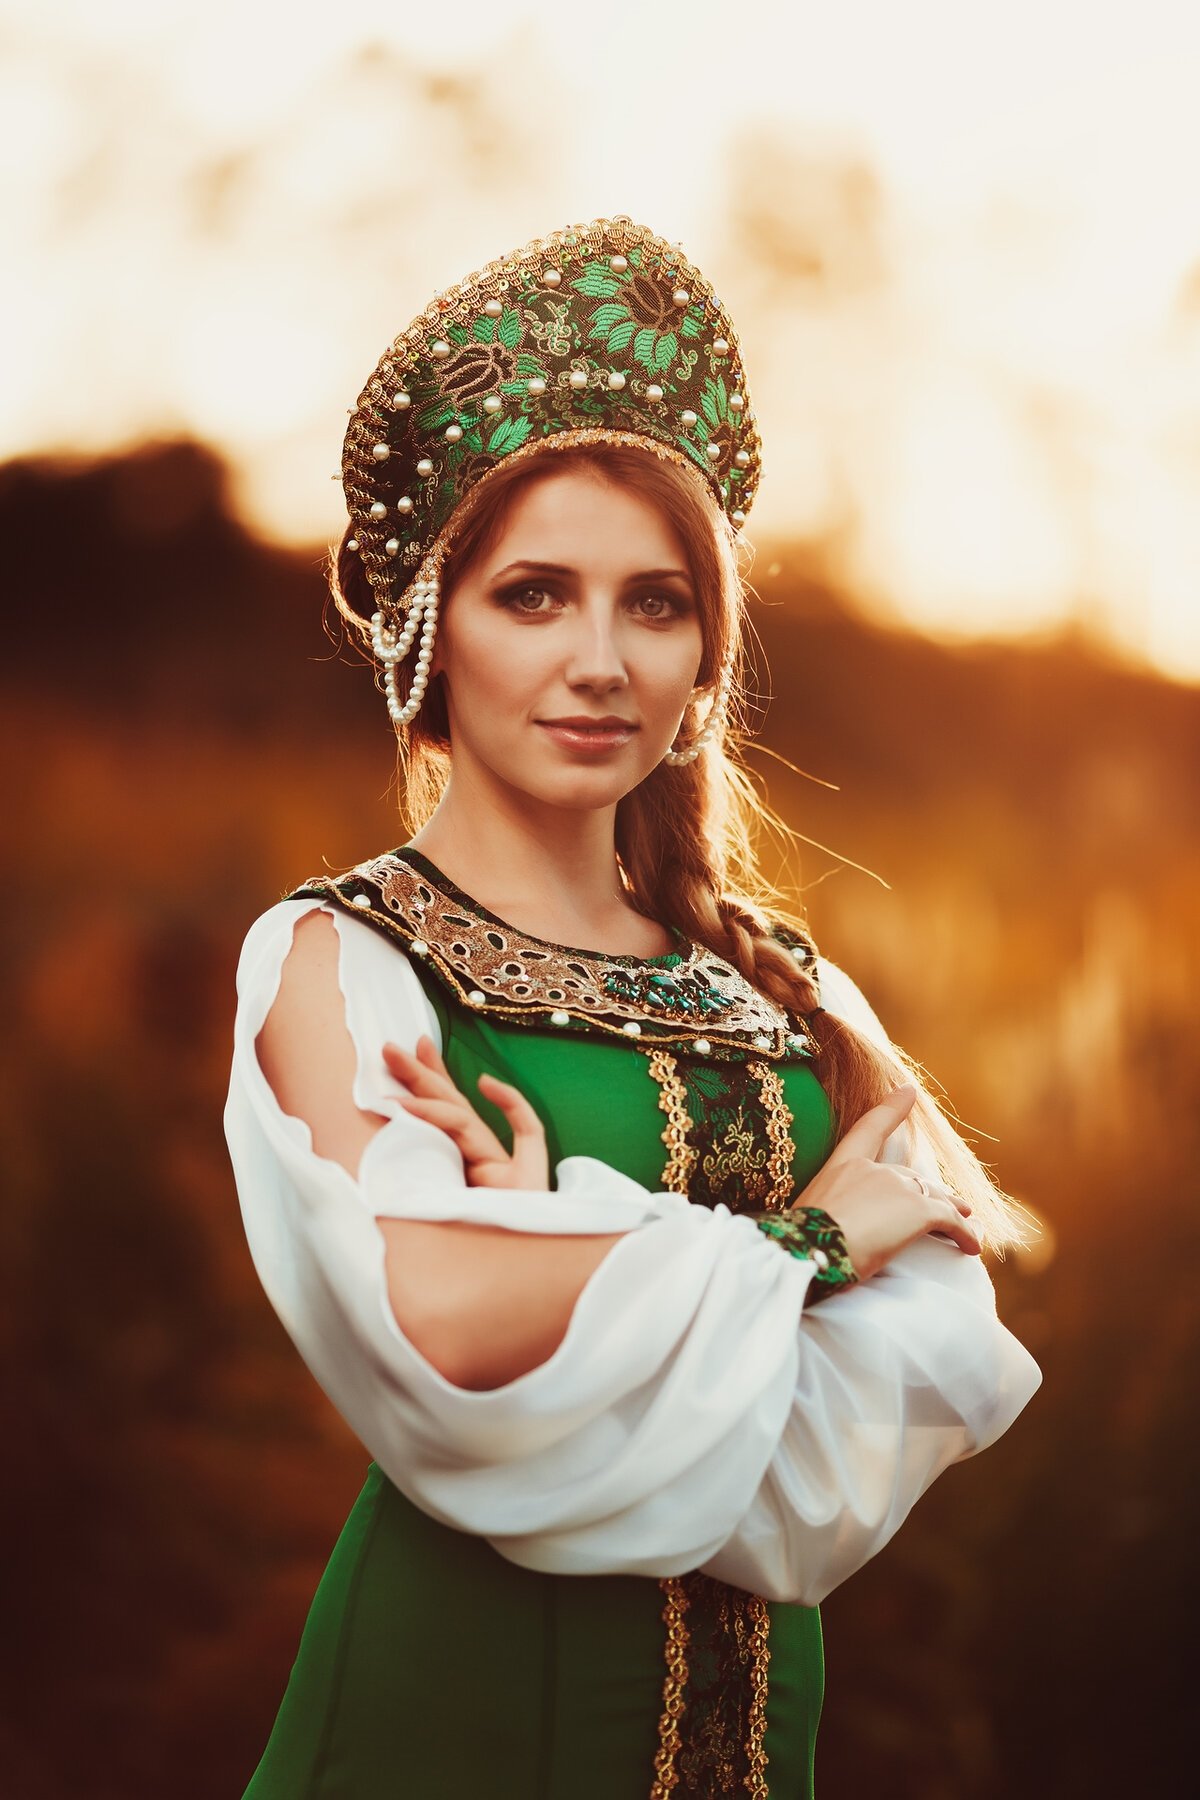 Национальный костюм русской красавицы